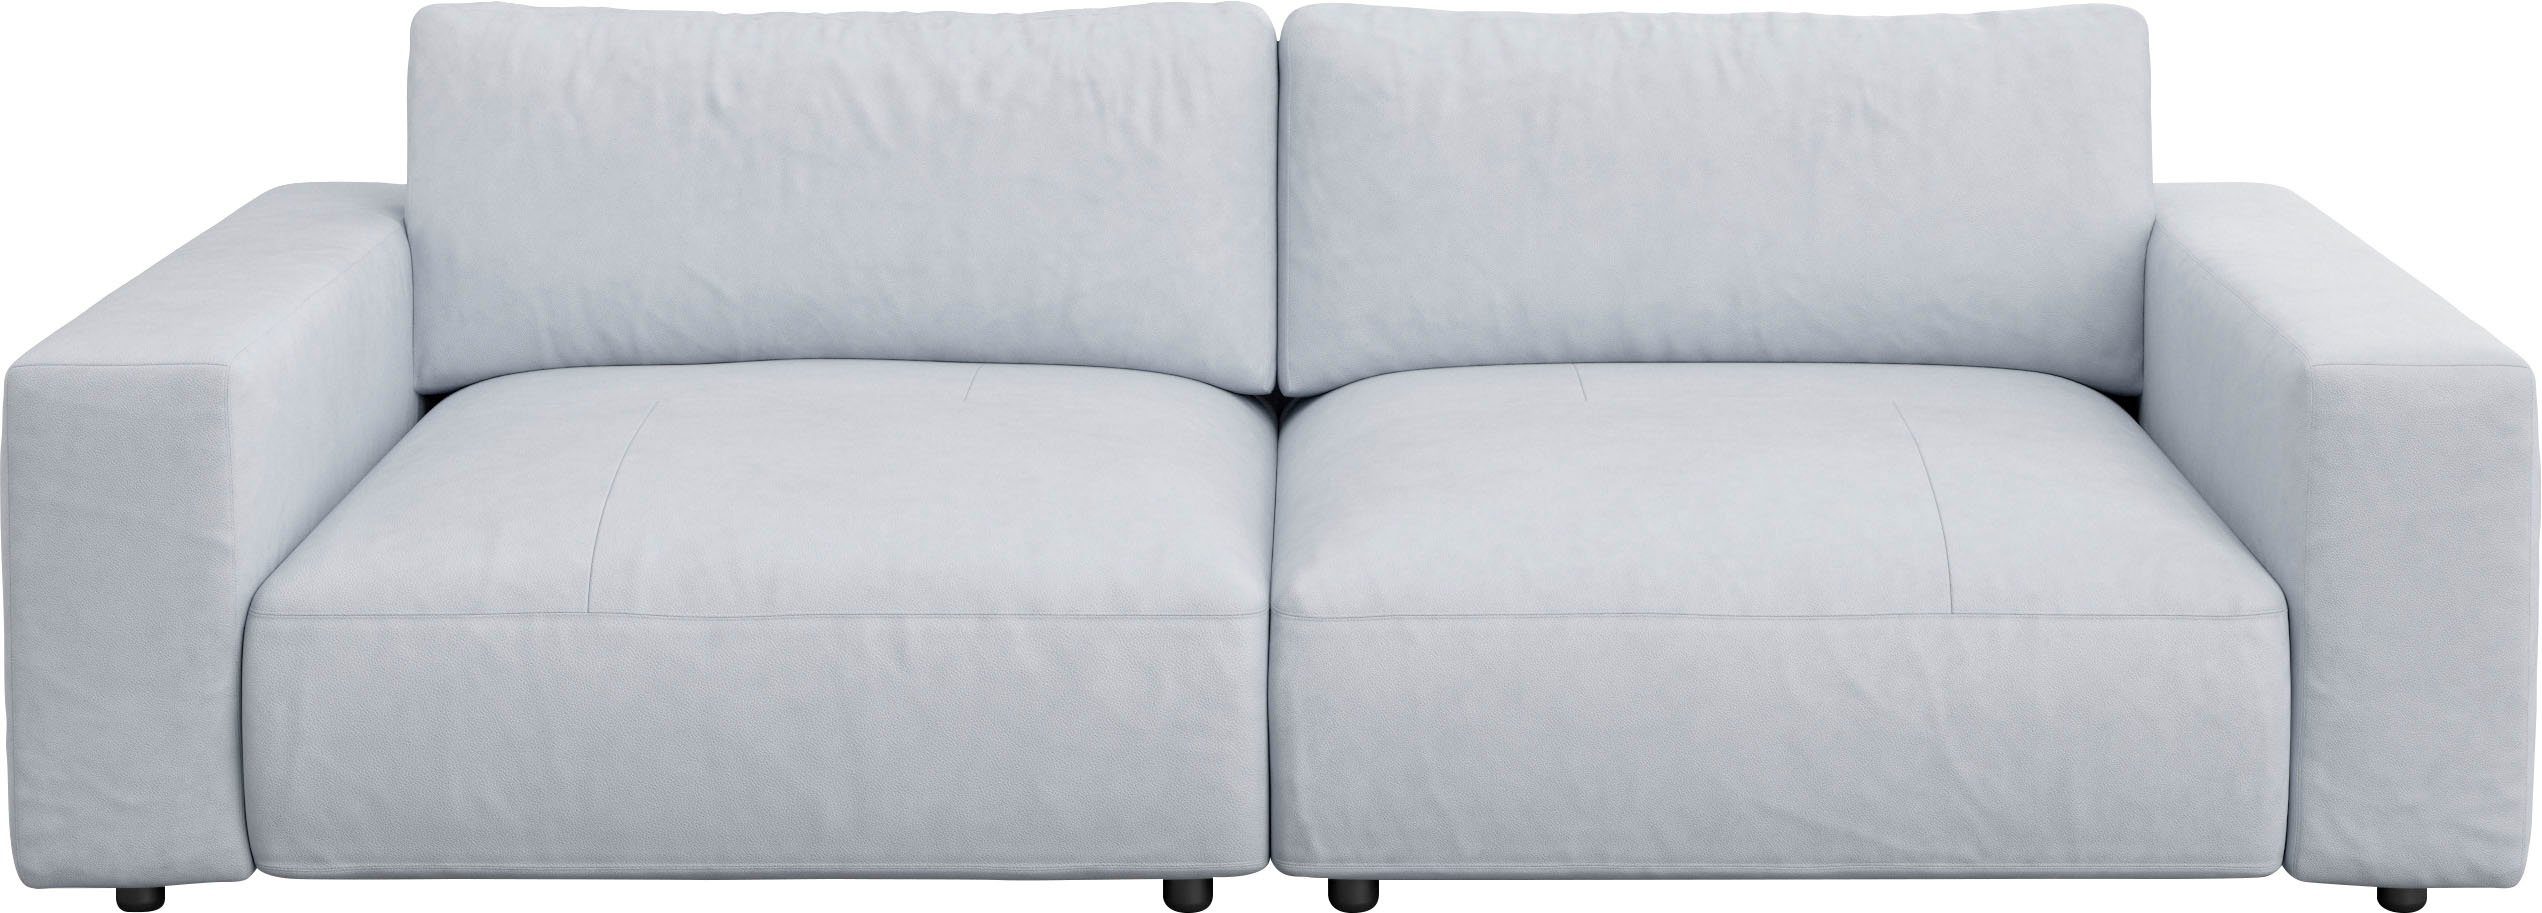 GALLERY M branded by unterschiedlichen Nähten, 4 LUCIA, Musterring Big-Sofa Qualitäten in vielen 2,5-Sitzer und